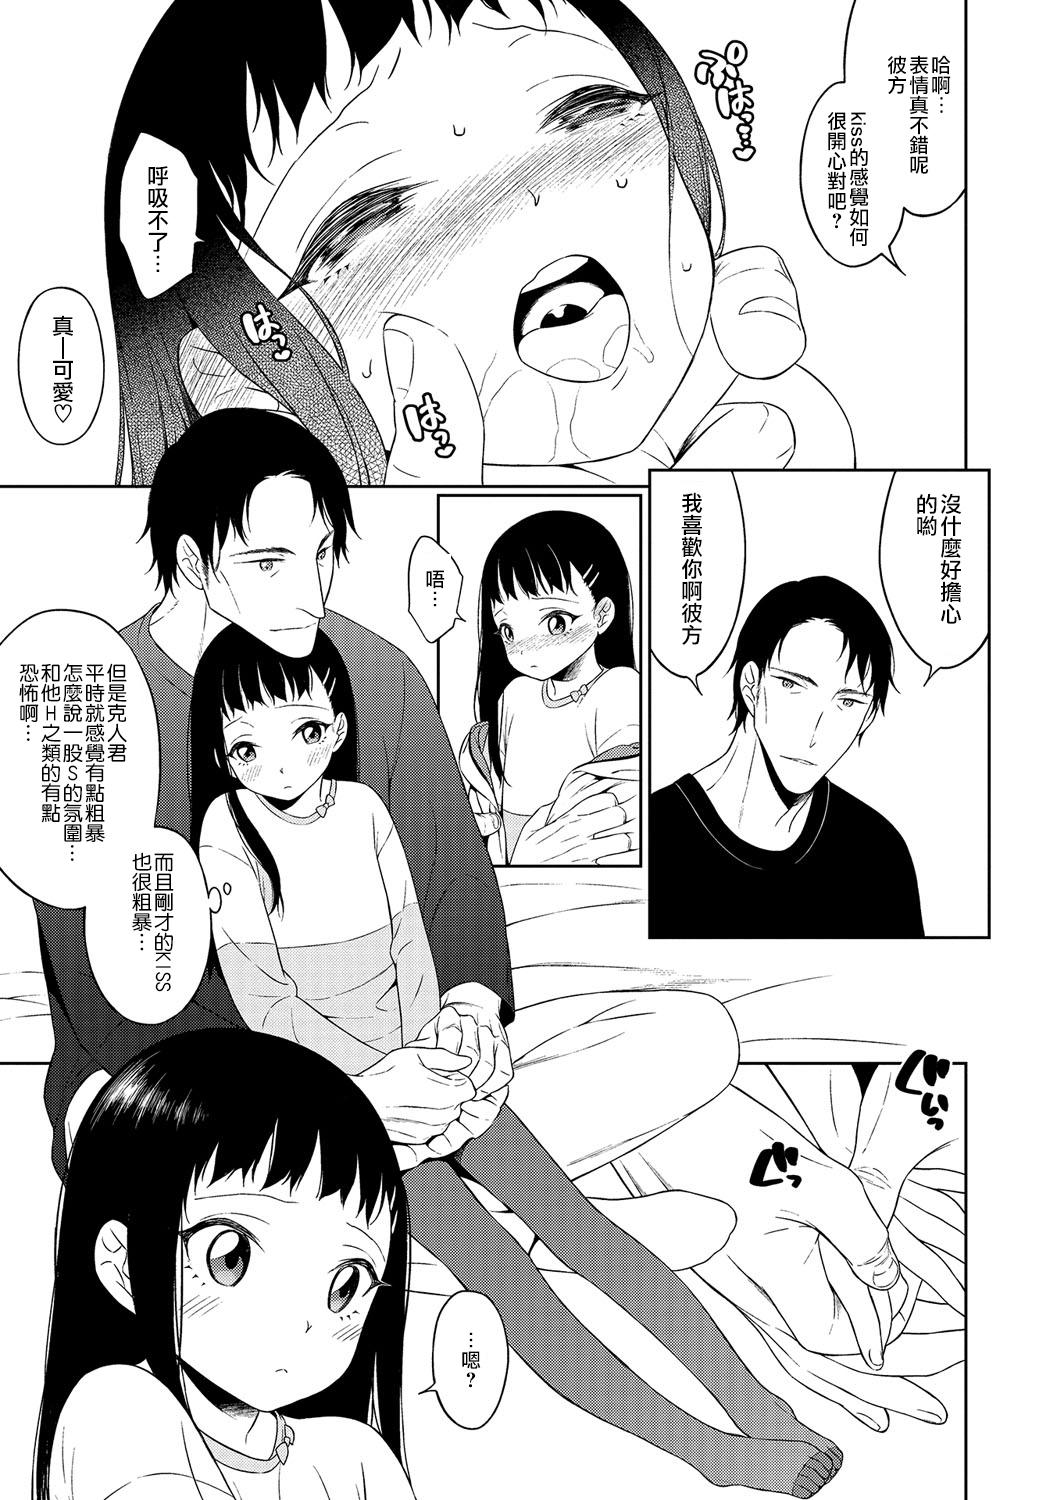 Interracial Porn Itoshi no? Giwaku no? S Kei Kareshi Amatuer - Page 3